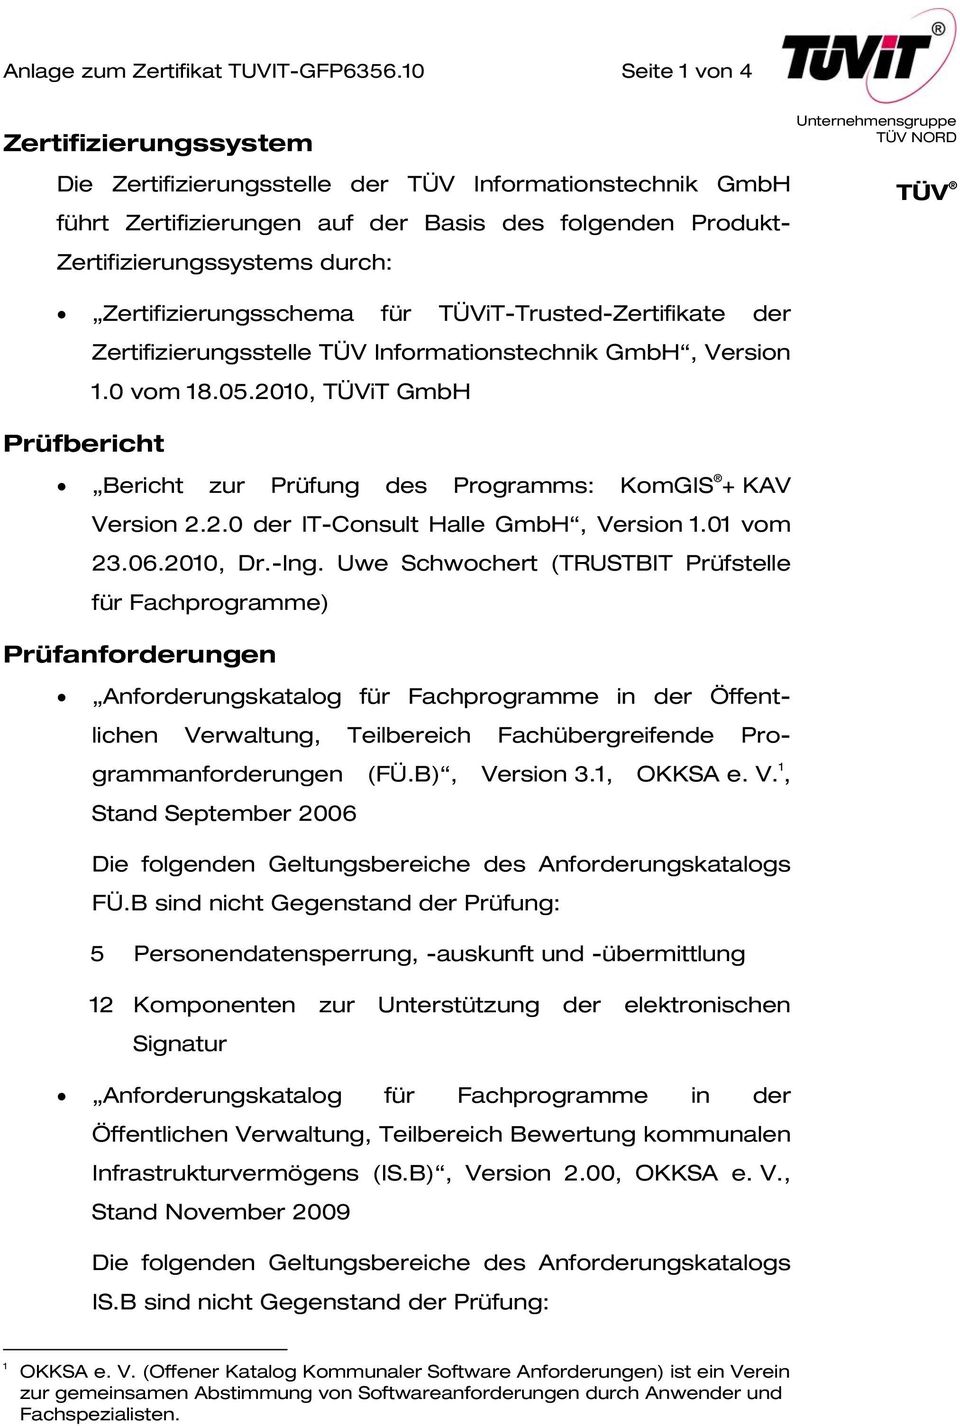 Zertifizierungsschema für TÜViT-Trusted-Zertifikate der Zertifizierungsstelle TÜV Informationstechnik GmbH, Version 1.0 vom 18.05.